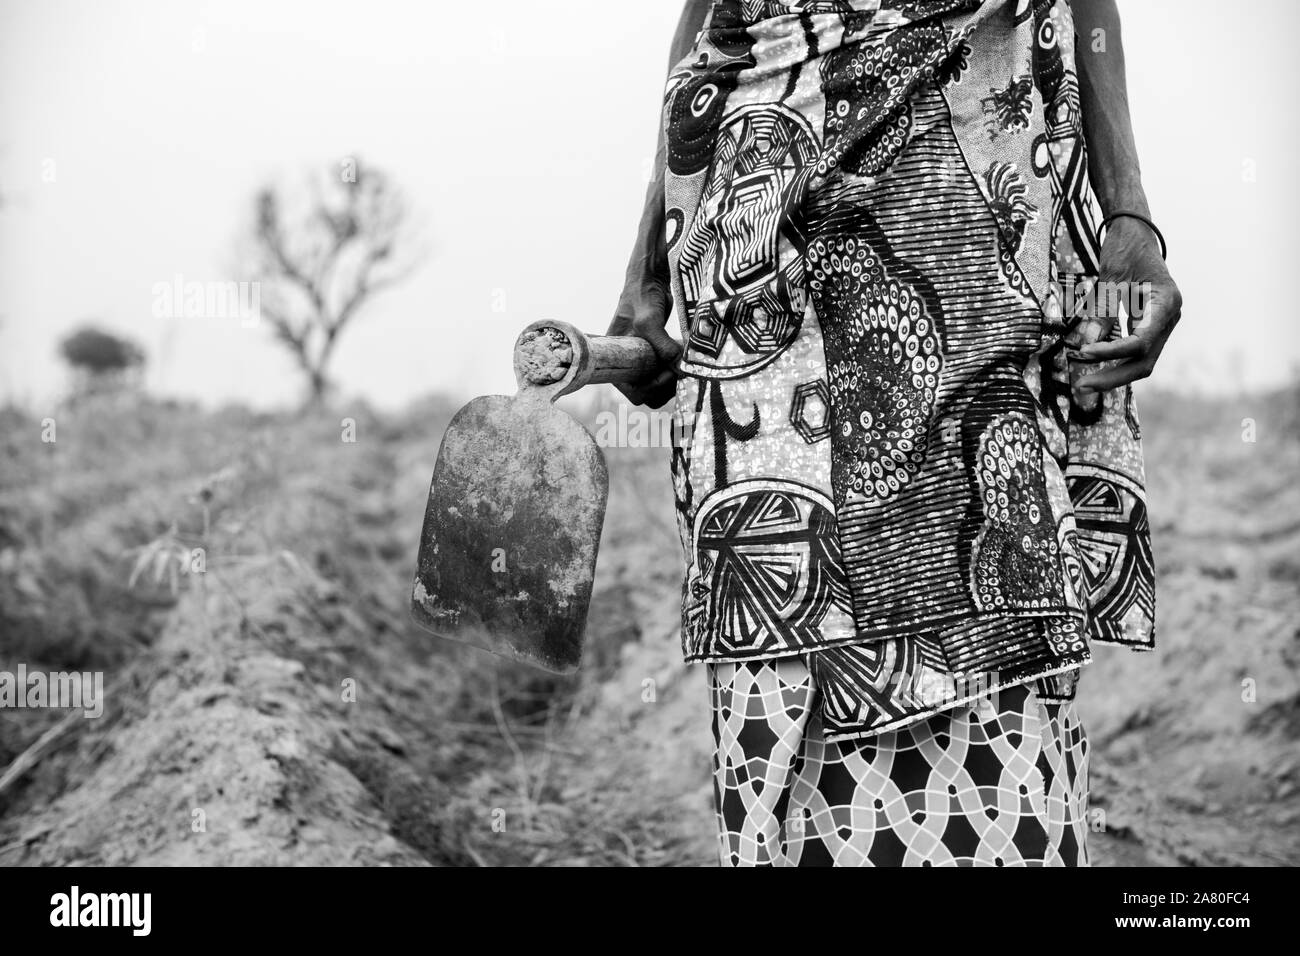 La agricultora local vestida con coloridas telas africanas. Blanco y negro. Foto de stock